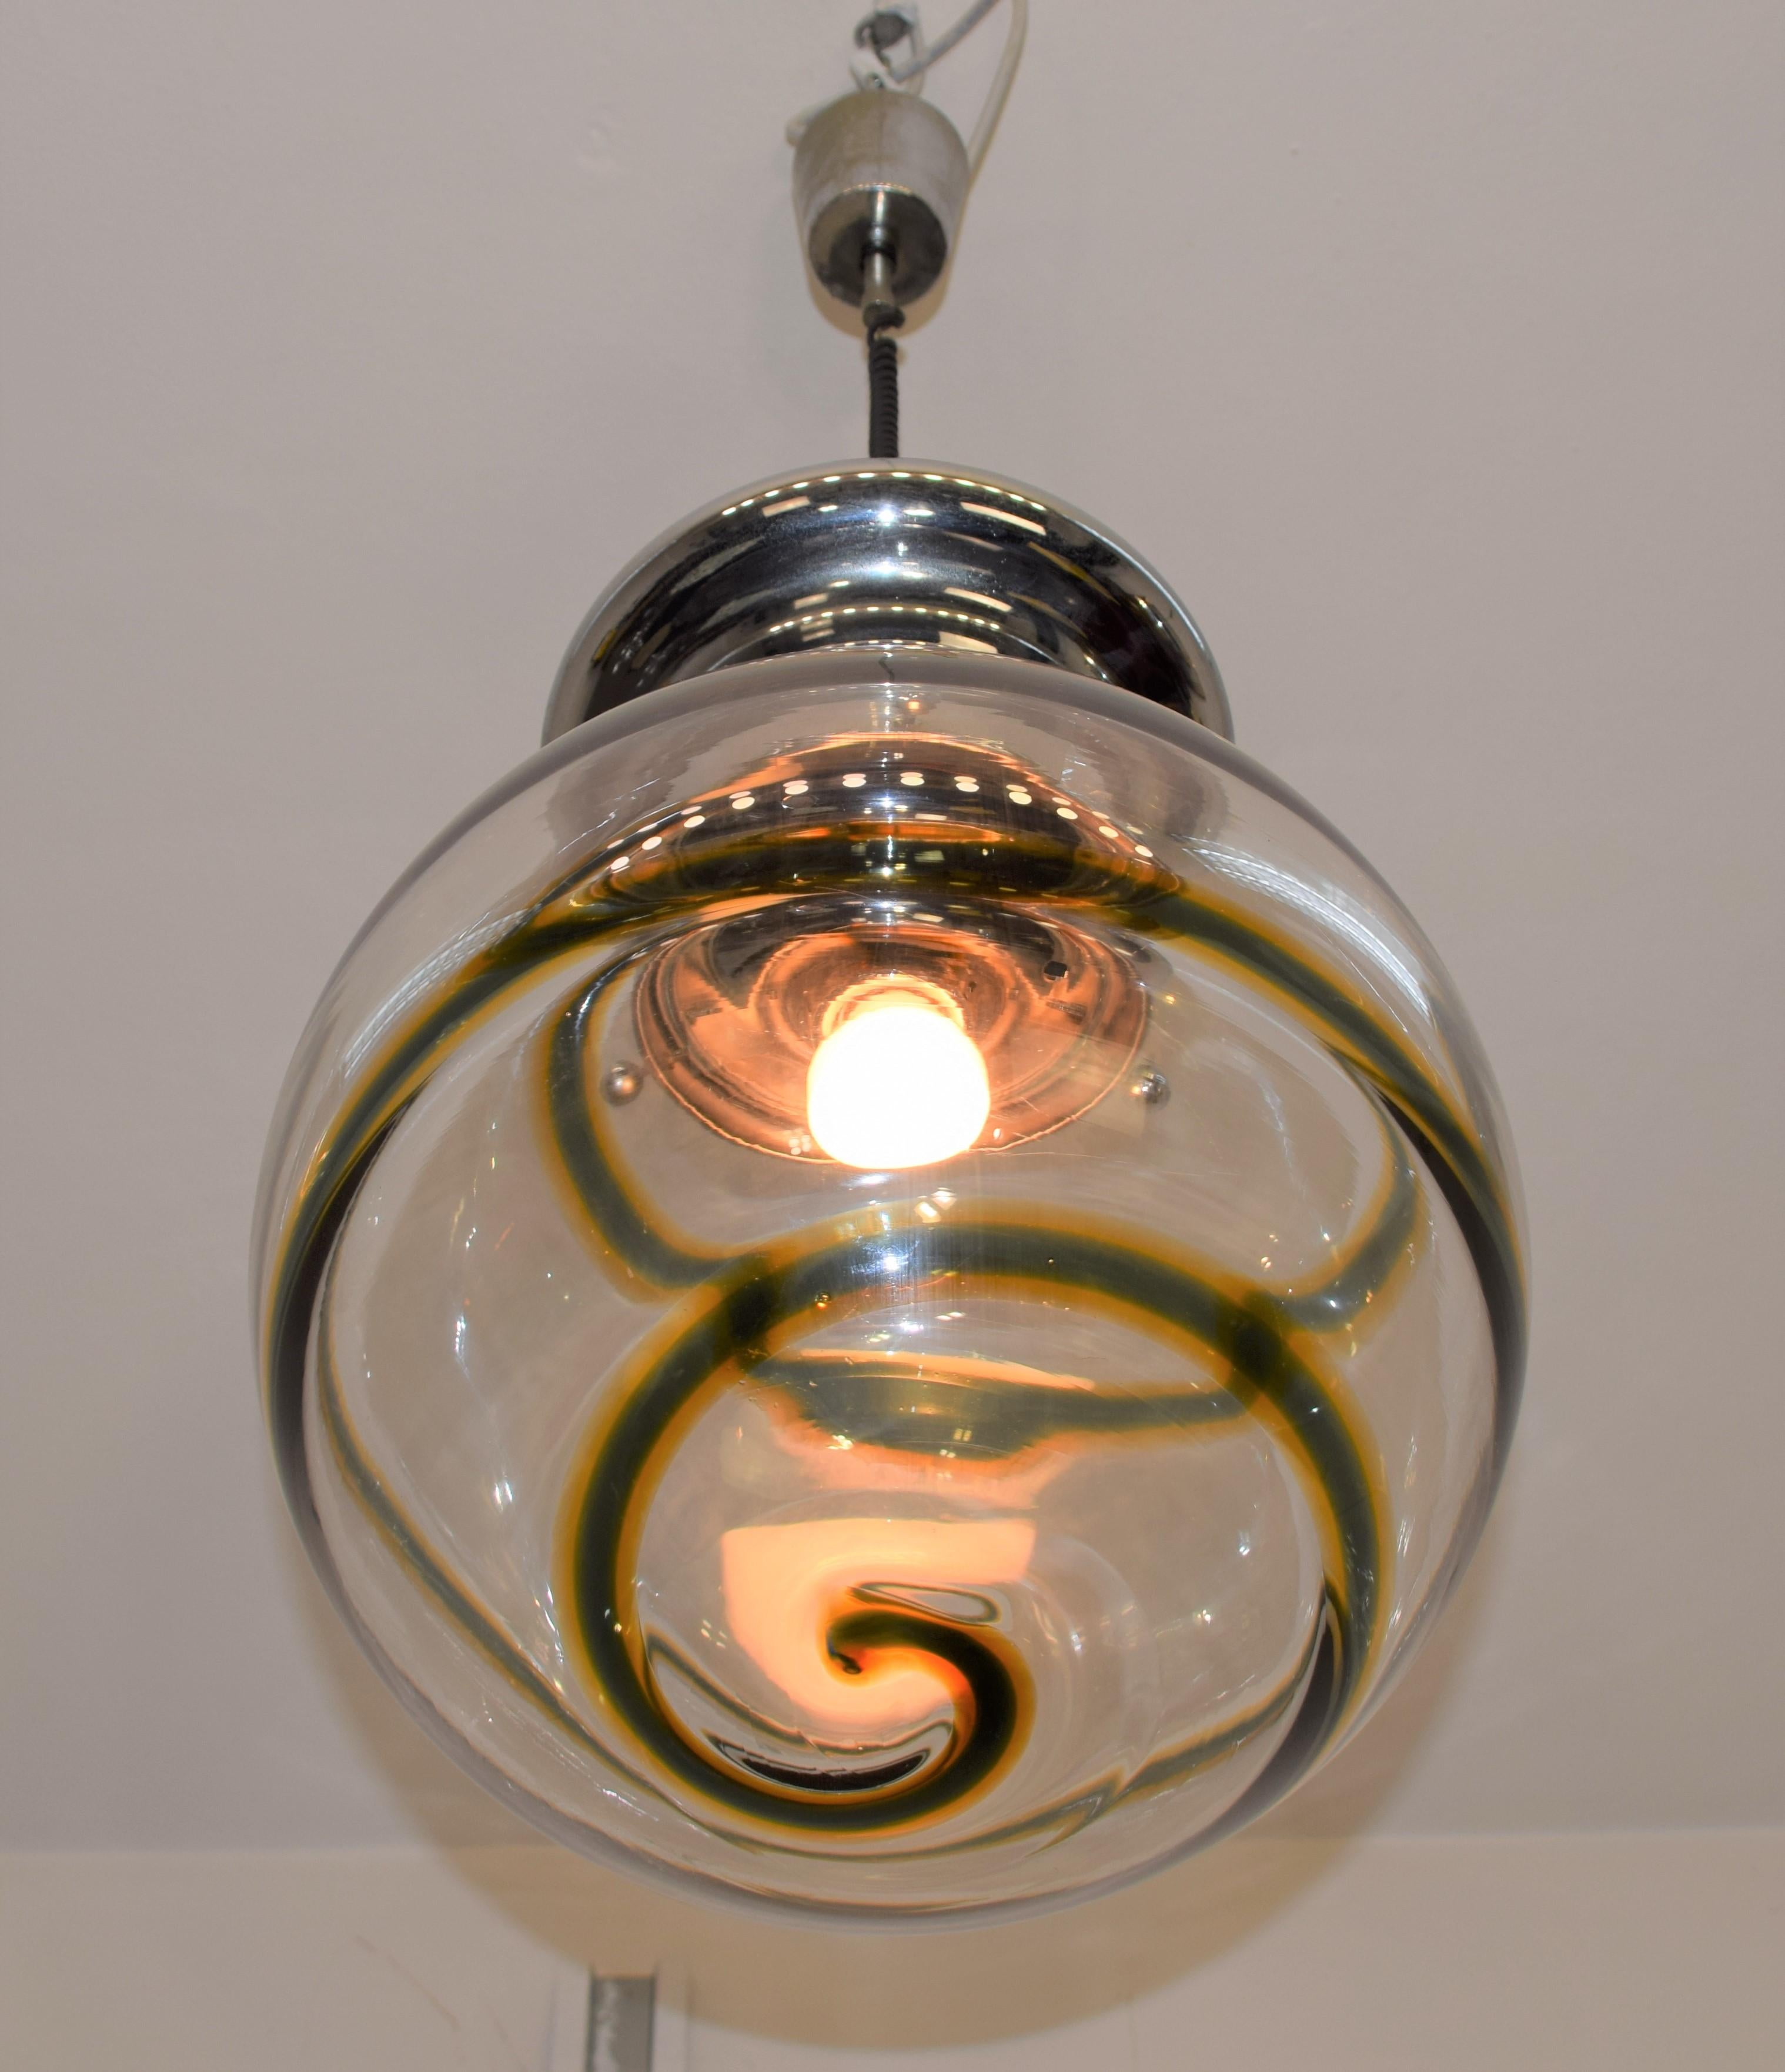 Italienische Hängeleuchte, Murano-Glas, 1970er Jahre.

Abmessungen: H= 115 cm; D= 40 cm.
